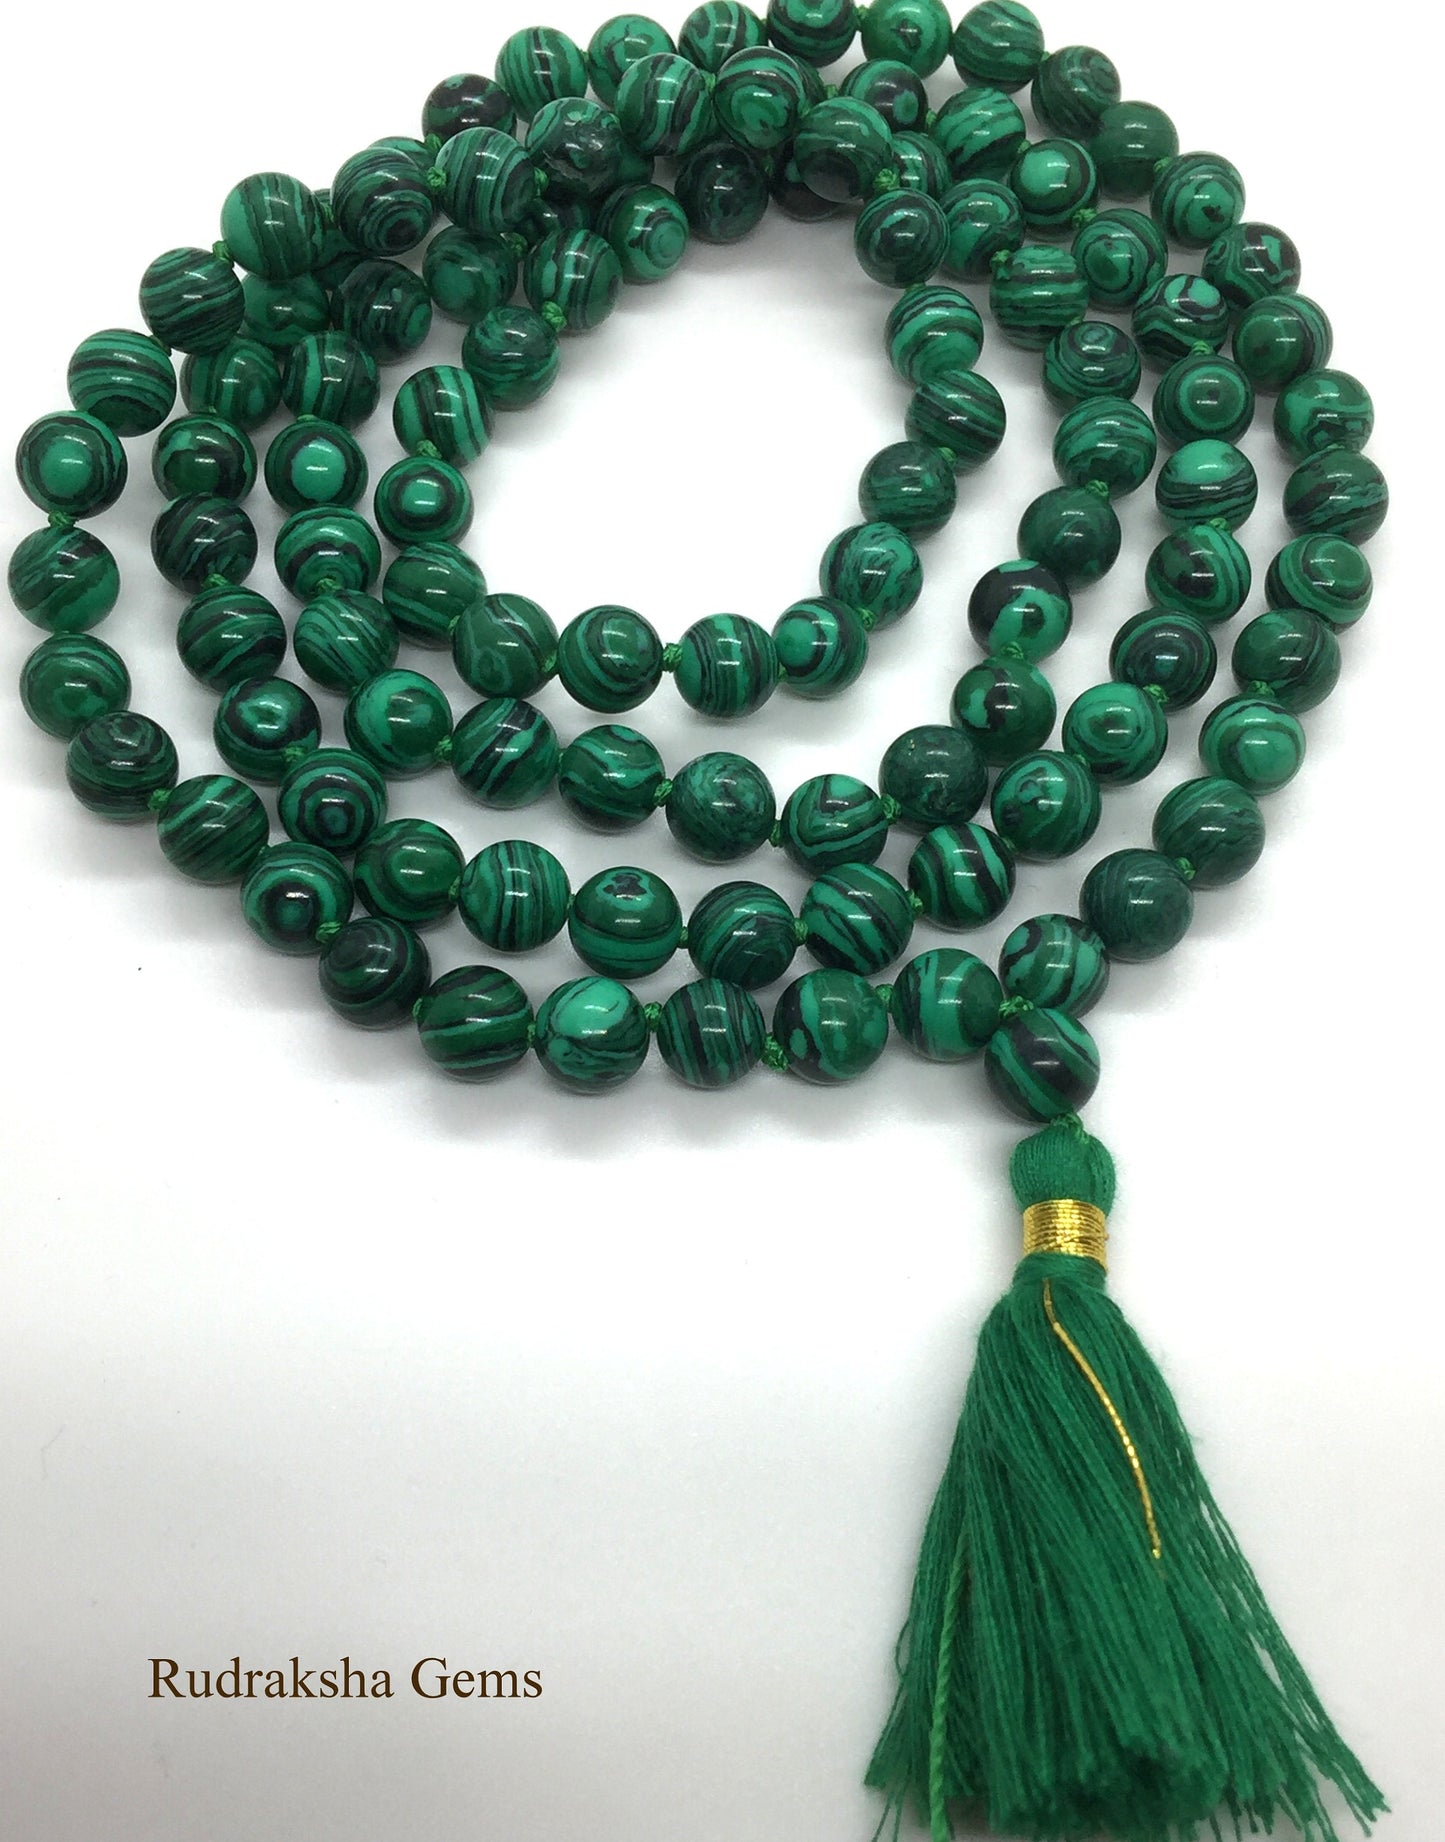 Malachite Japa Mala 108 Beads / Hand knotted Full Mala Necklace / Meditation and Yoga Mala / Heart Chakra Mala Buddhist Prayer Beads Jewelry